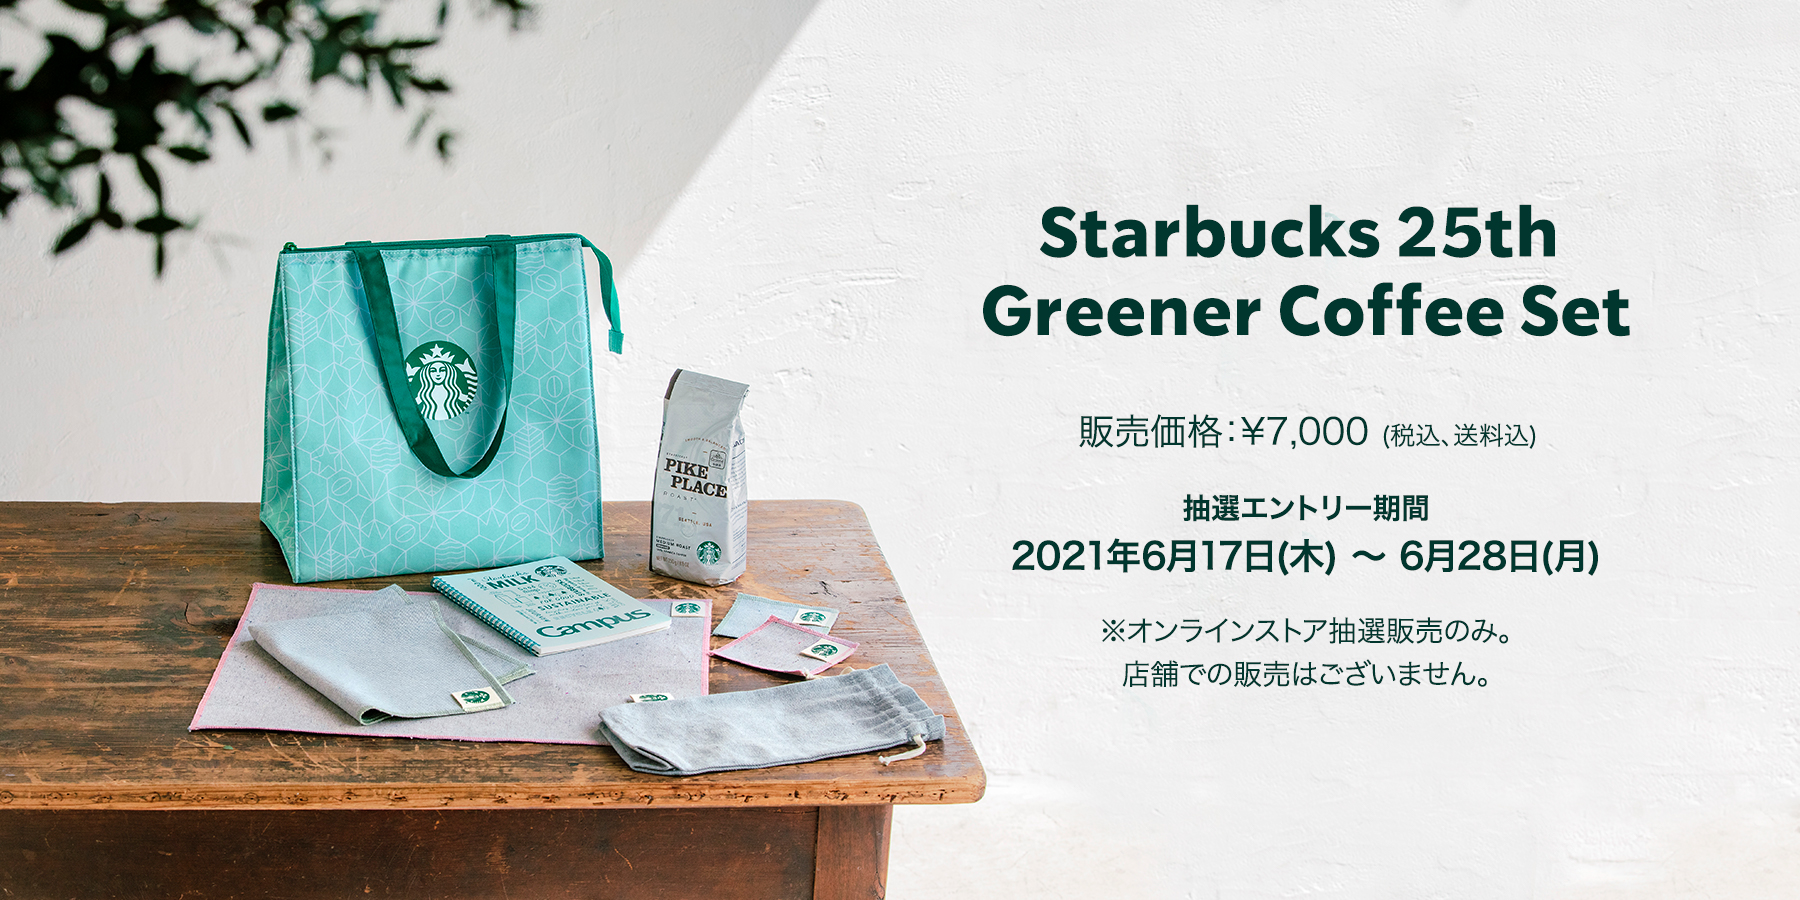 Starbucks 25th Greener Coffee Set グリーンな未来につながるコーヒー 